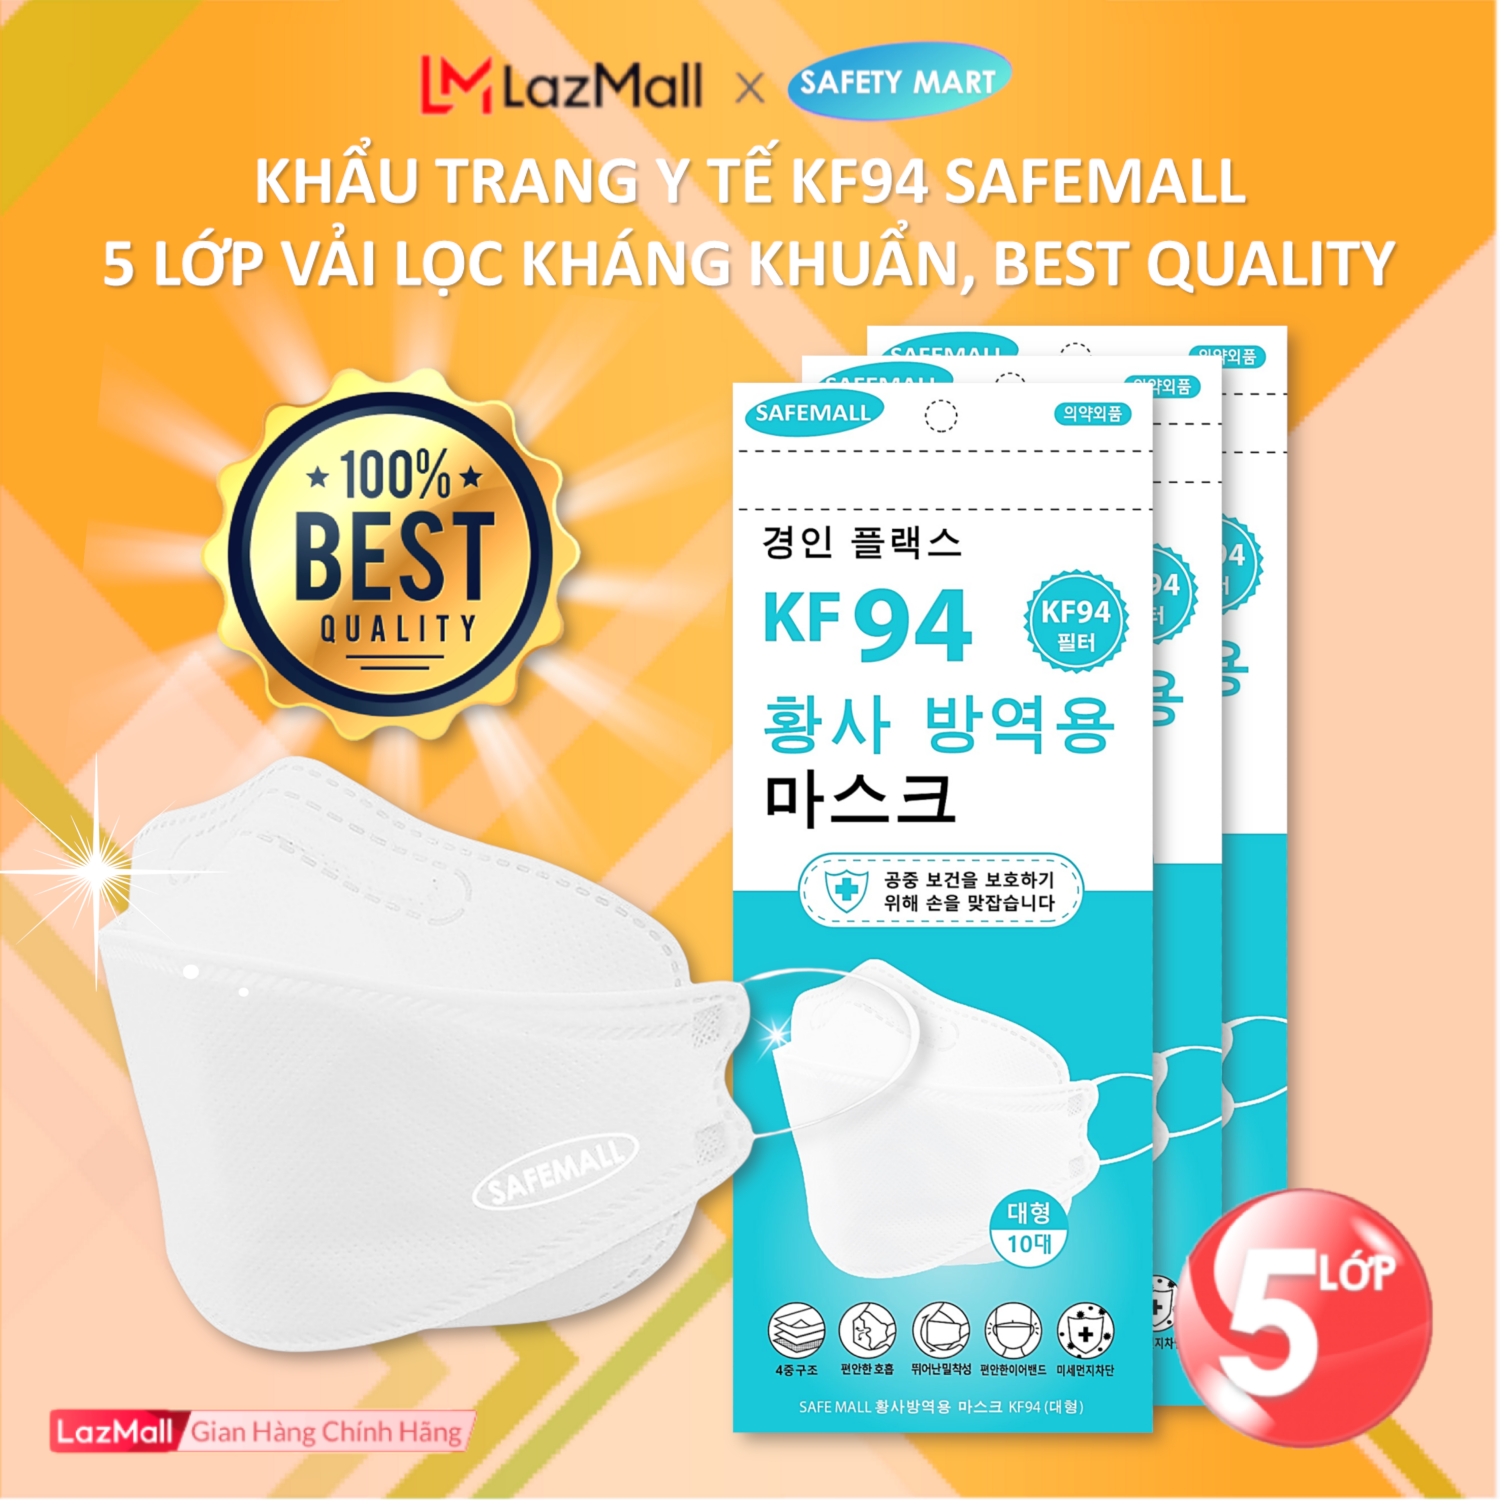 [HOT] Combo 100 chiếc Khẩu trang y tế 4D KF94 SafeMall Korea Technology, 5 lớp vải kháng khuẩn, kháng bụi mịn lên đến 99%, Khẩu trang dày đẹp loại 1 Best Quality – Hàng Chính Hãng Safety Mart Official